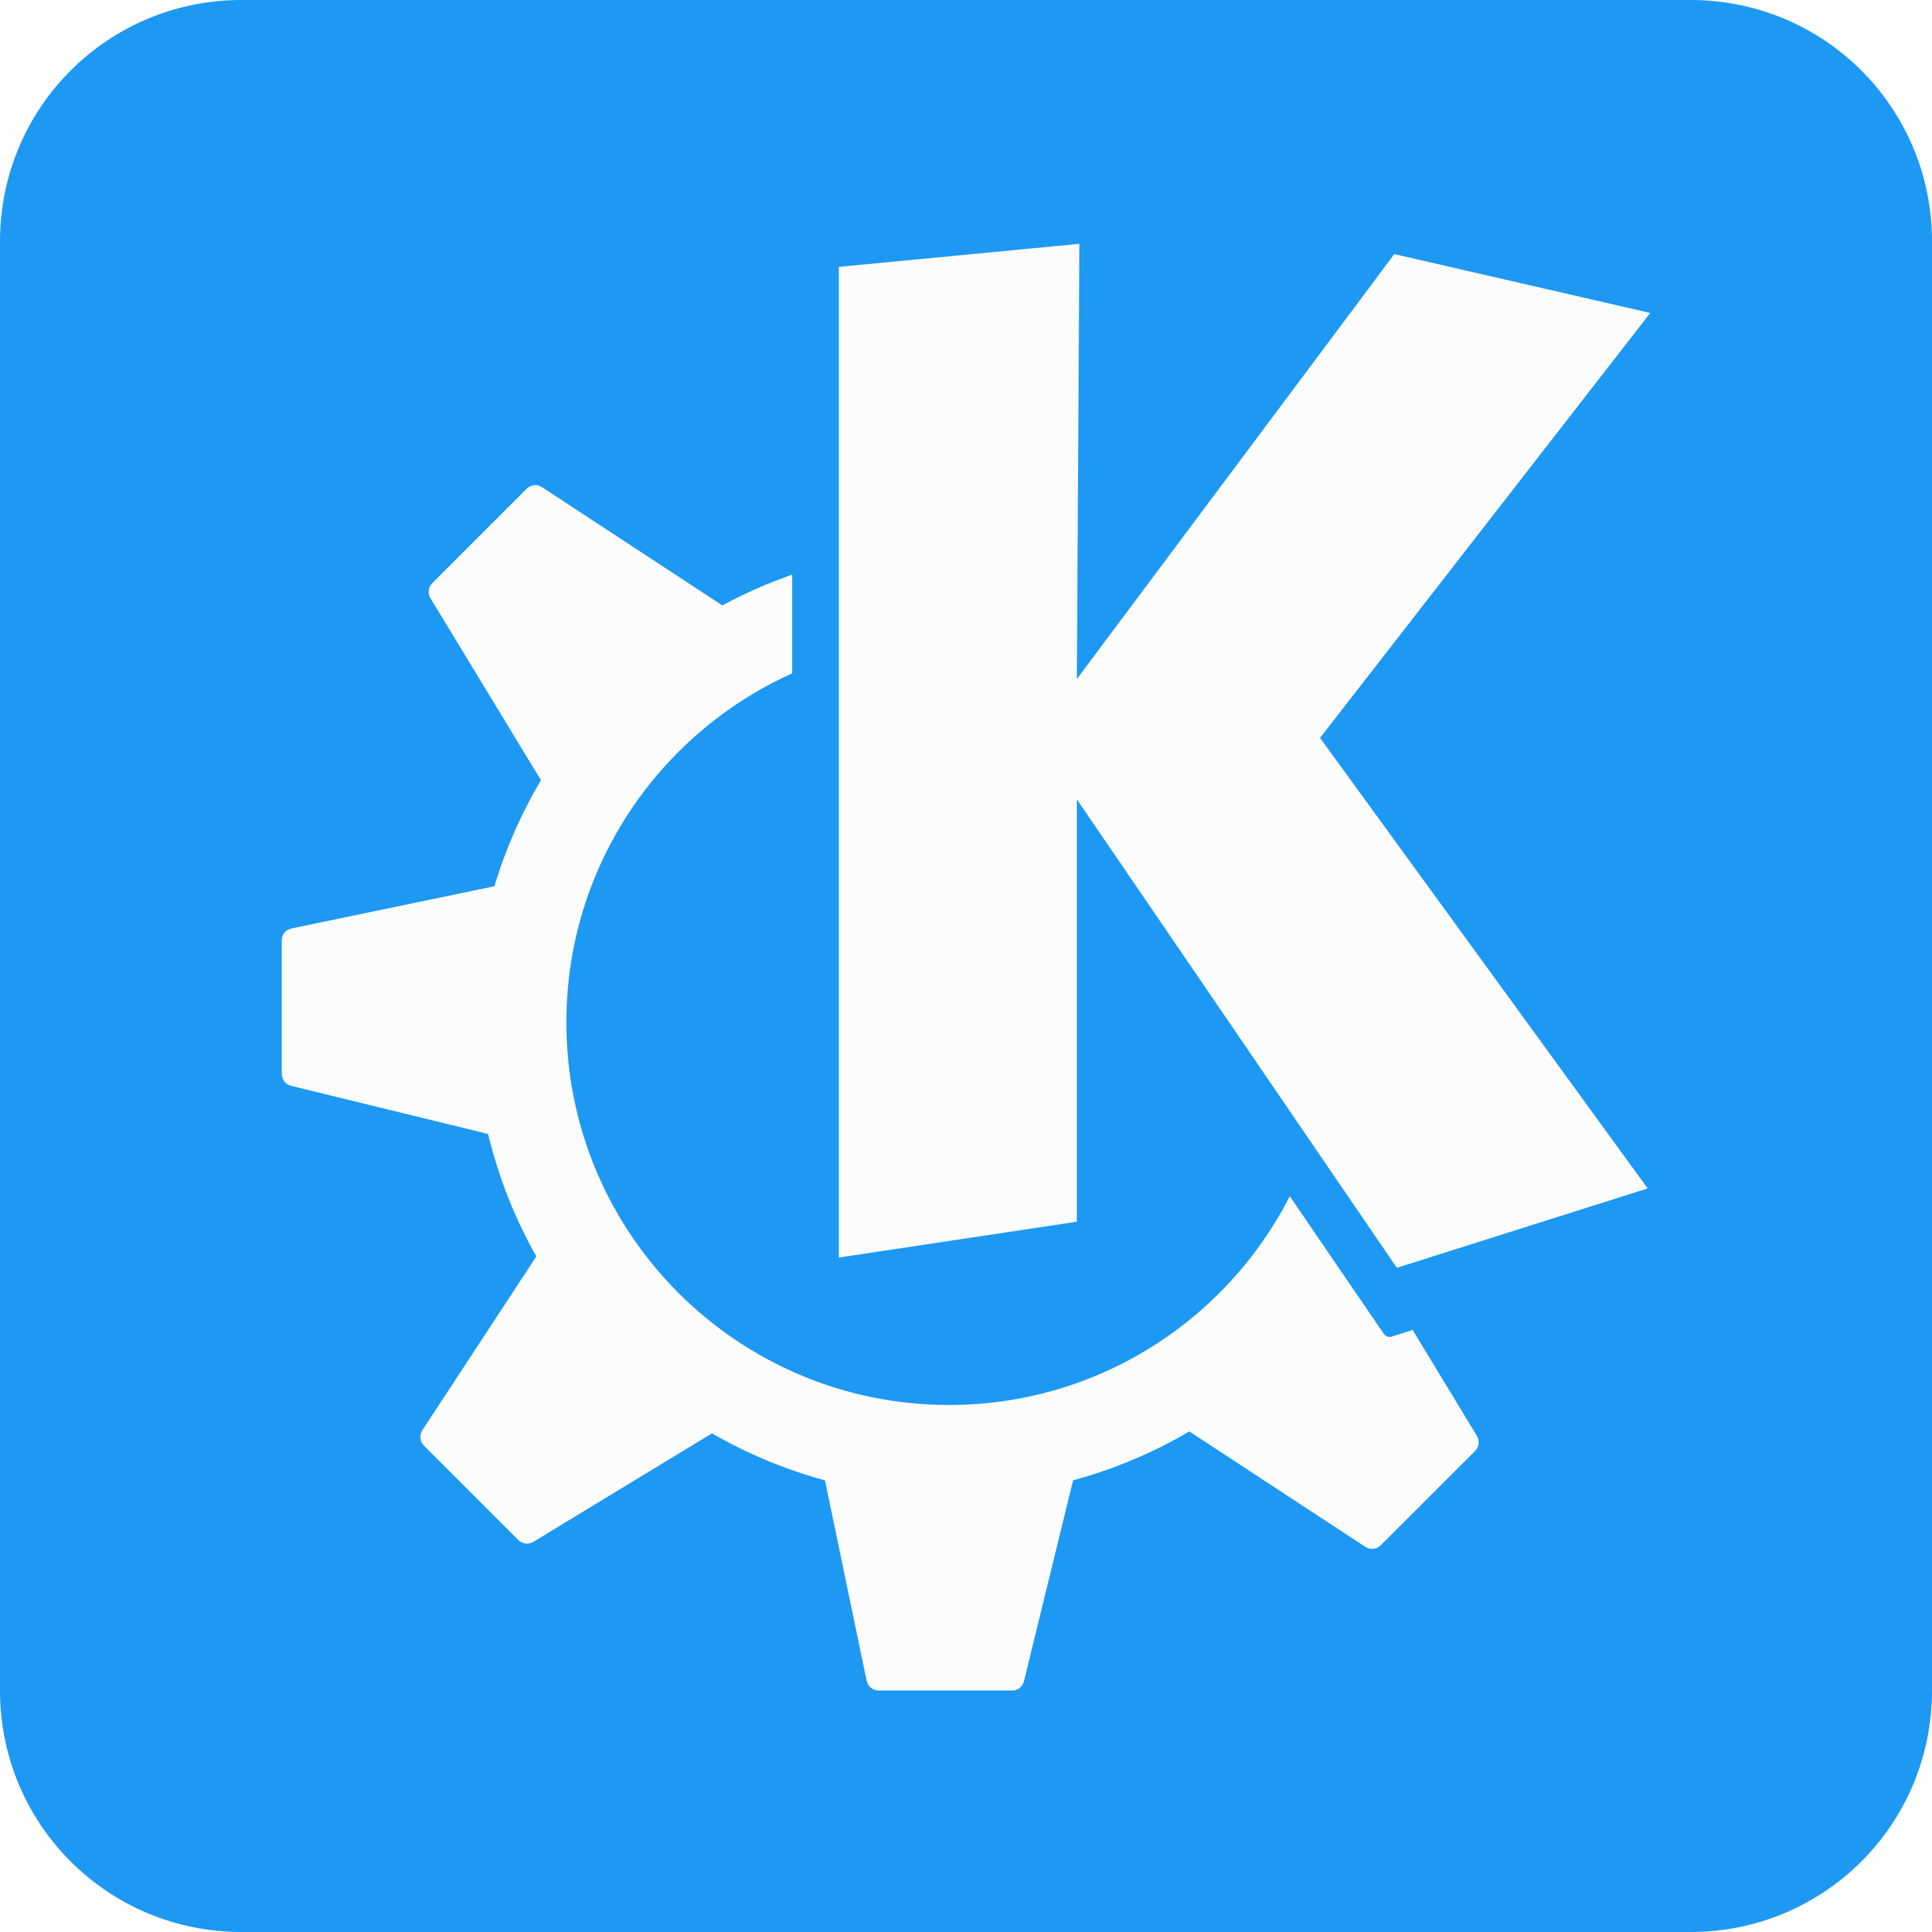 KDE e.V. logo